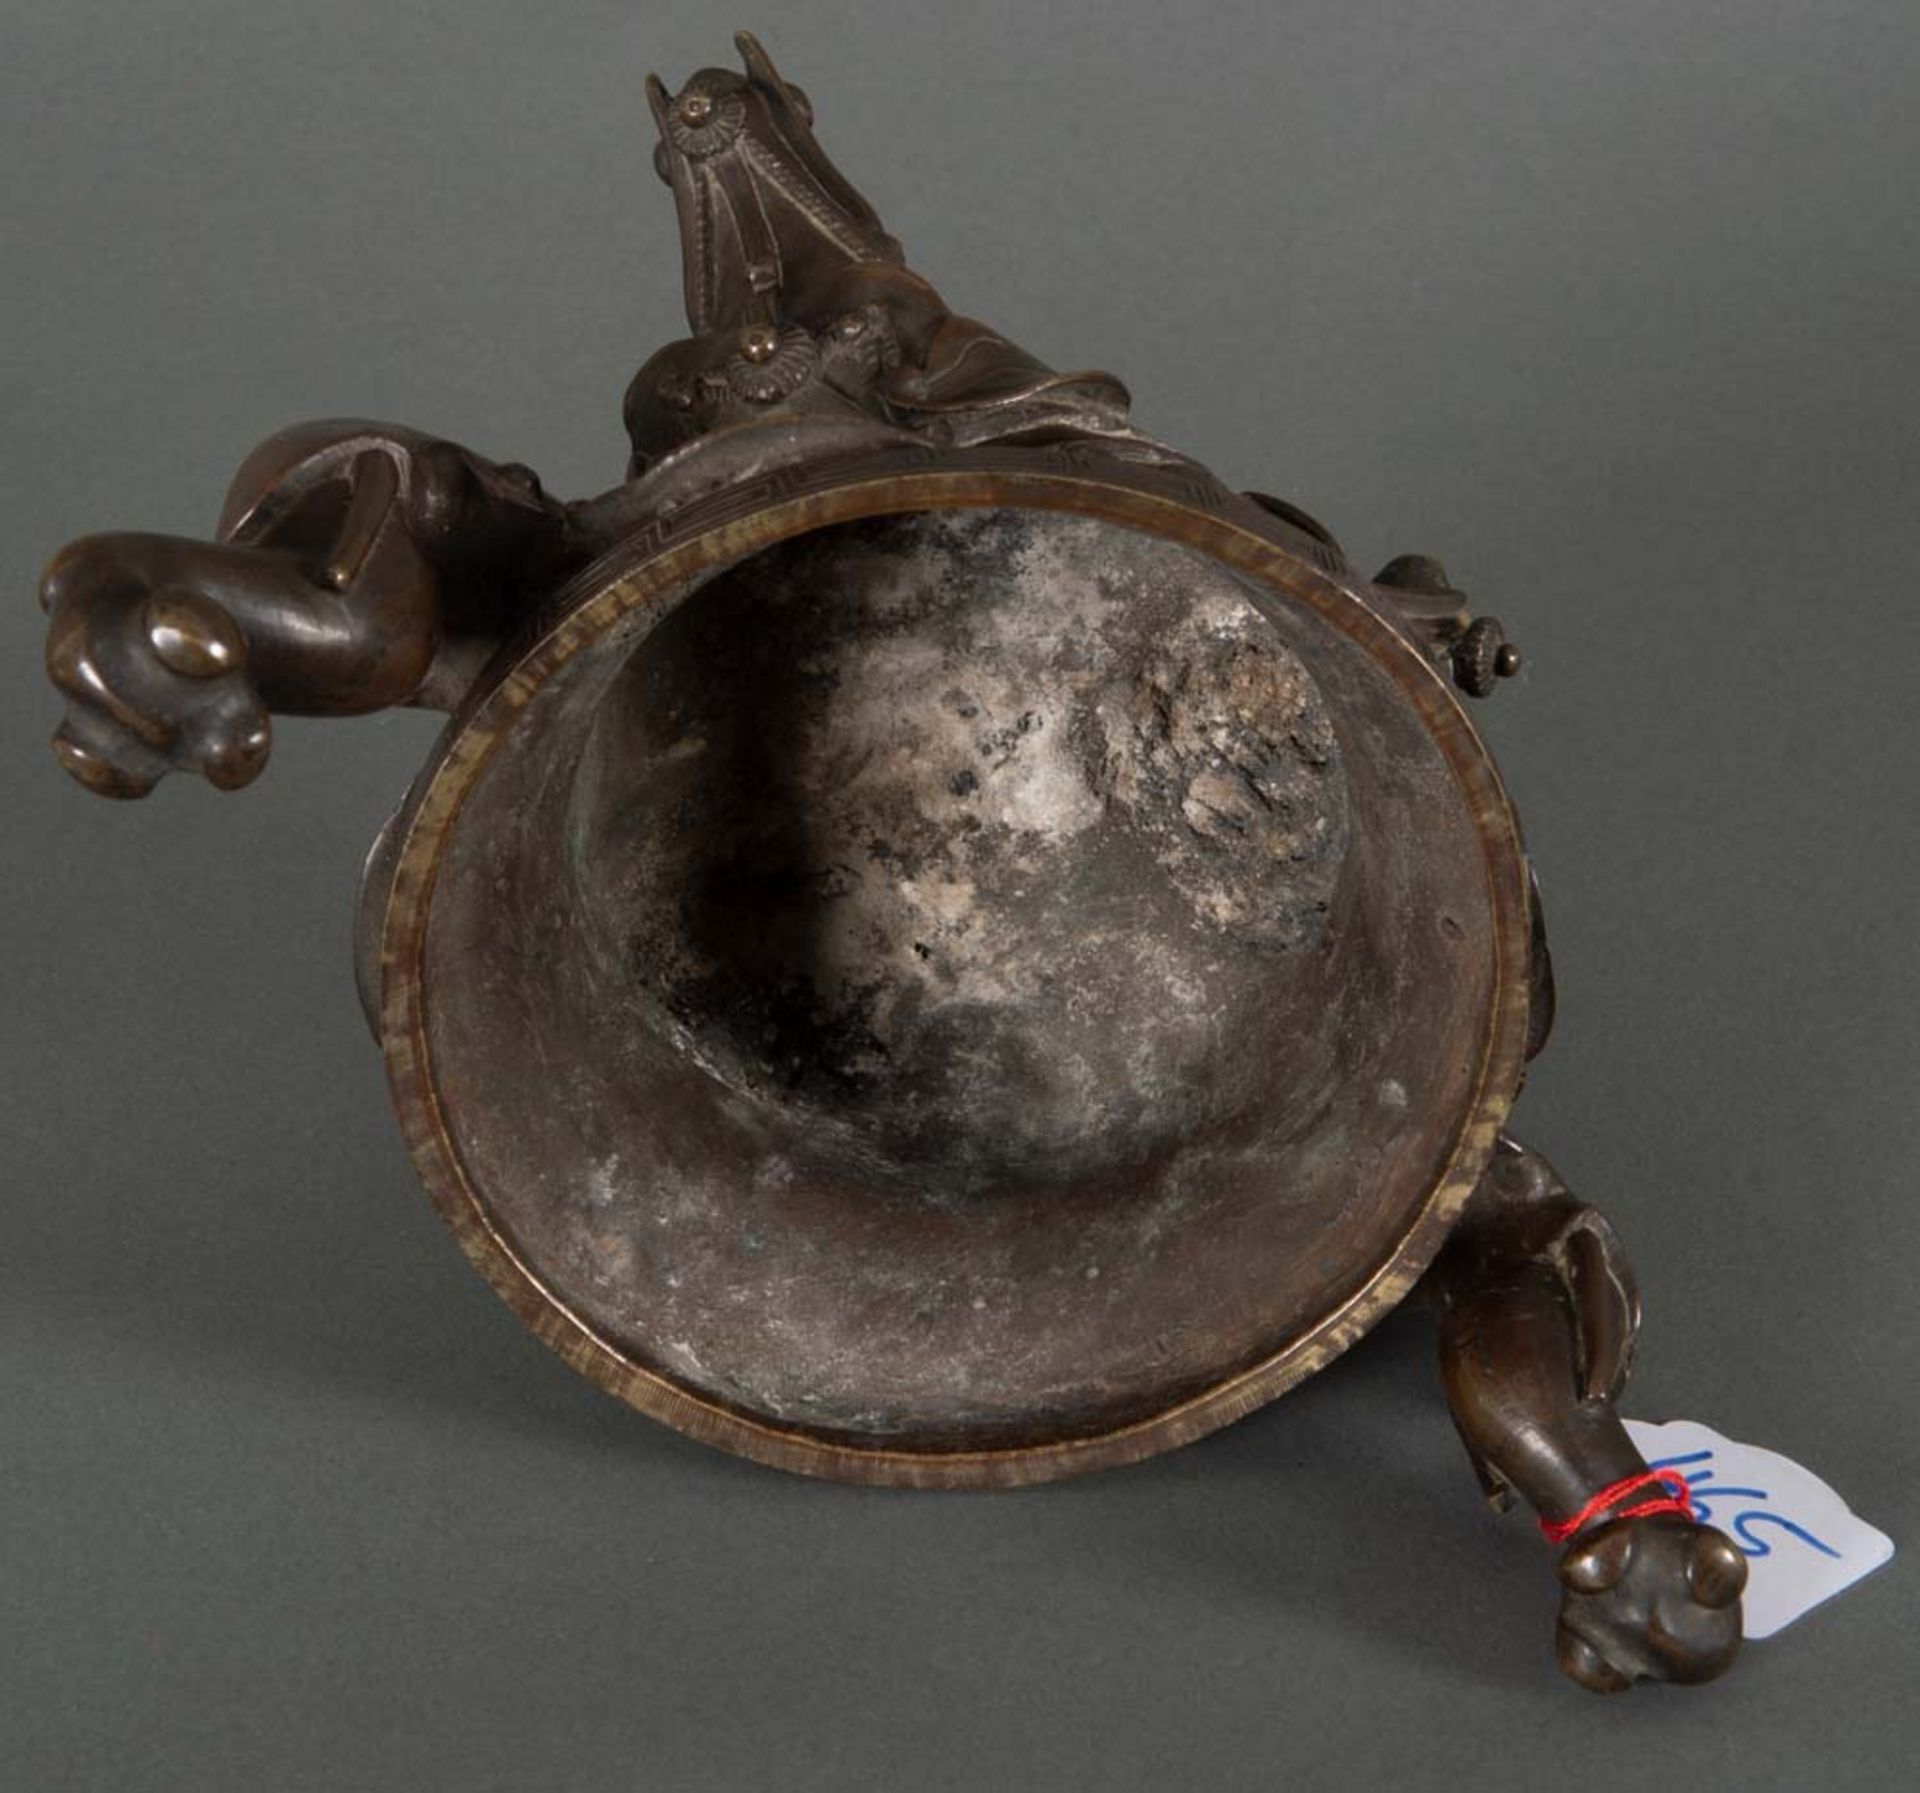 Räuchergefäß. China 18./19. Jh. Bronze, reliefiert, H=24 cm. - Bild 2 aus 2